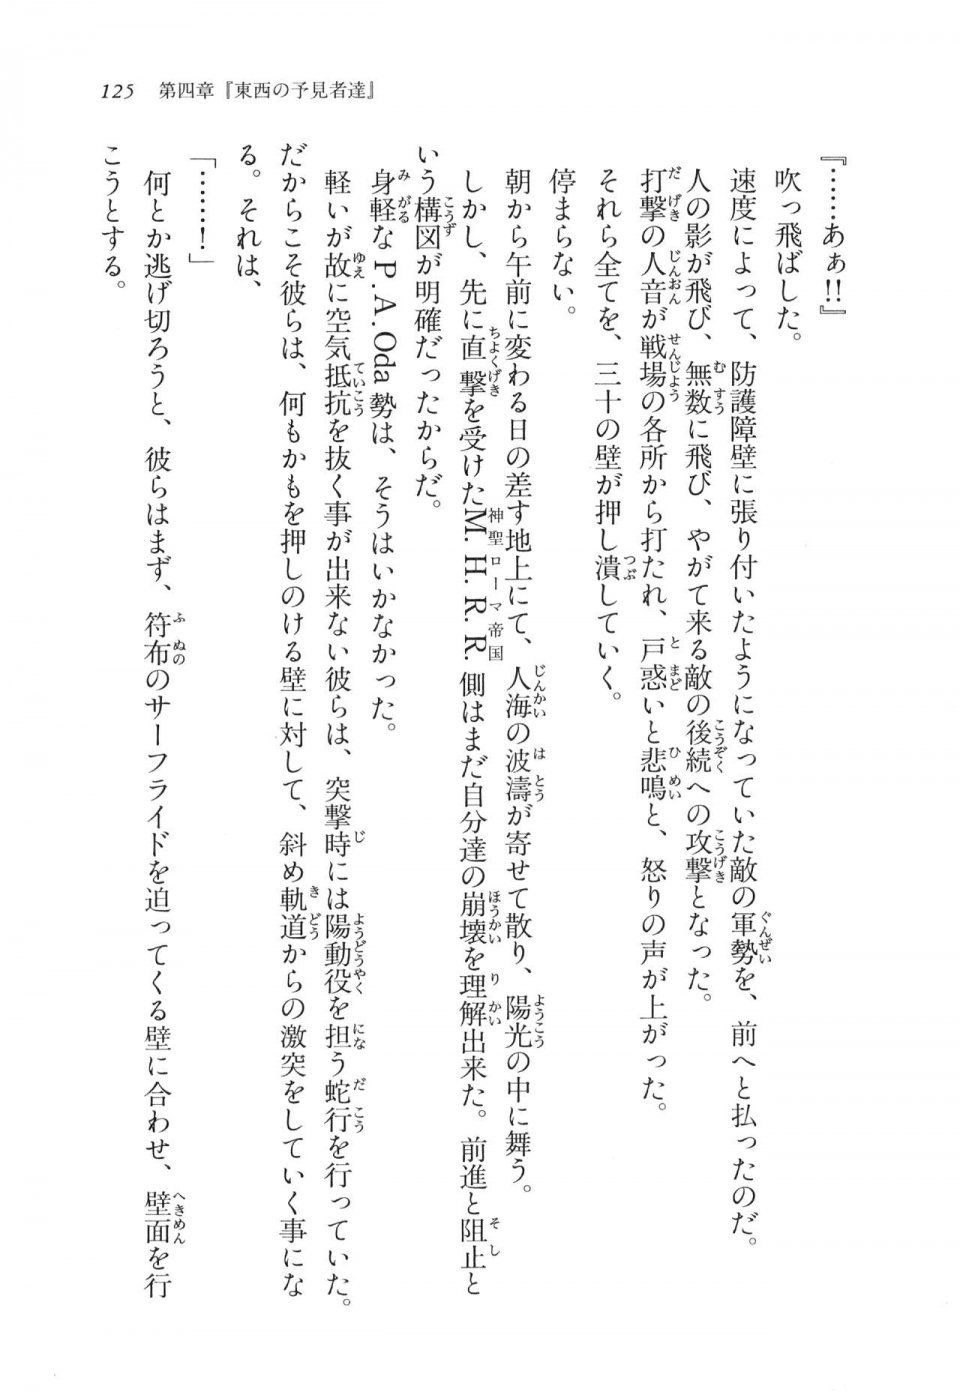 Kyoukai Senjou no Horizon LN Vol 11(5A) - Photo #125